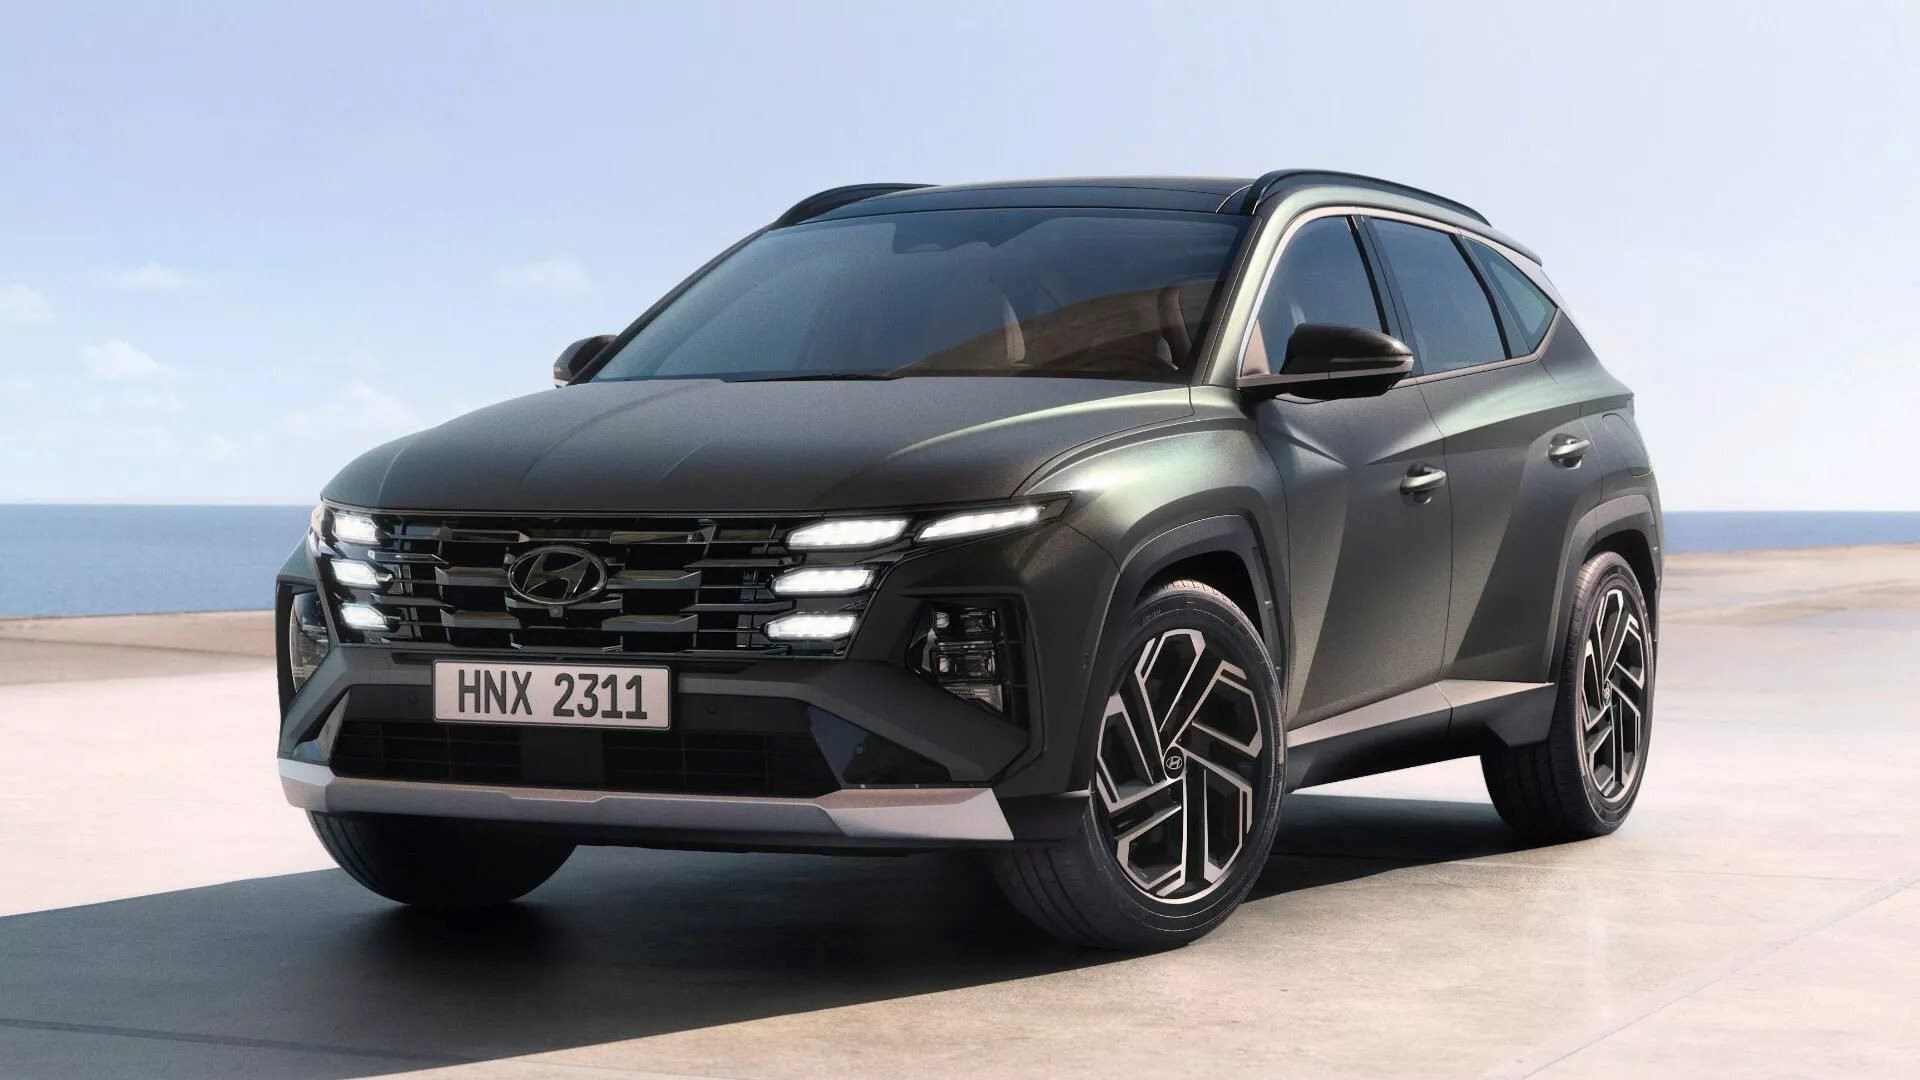 Hyundai Tucson 2025 ra mắt: Lột xác về nội thất, màn hình cong như xe BMW 